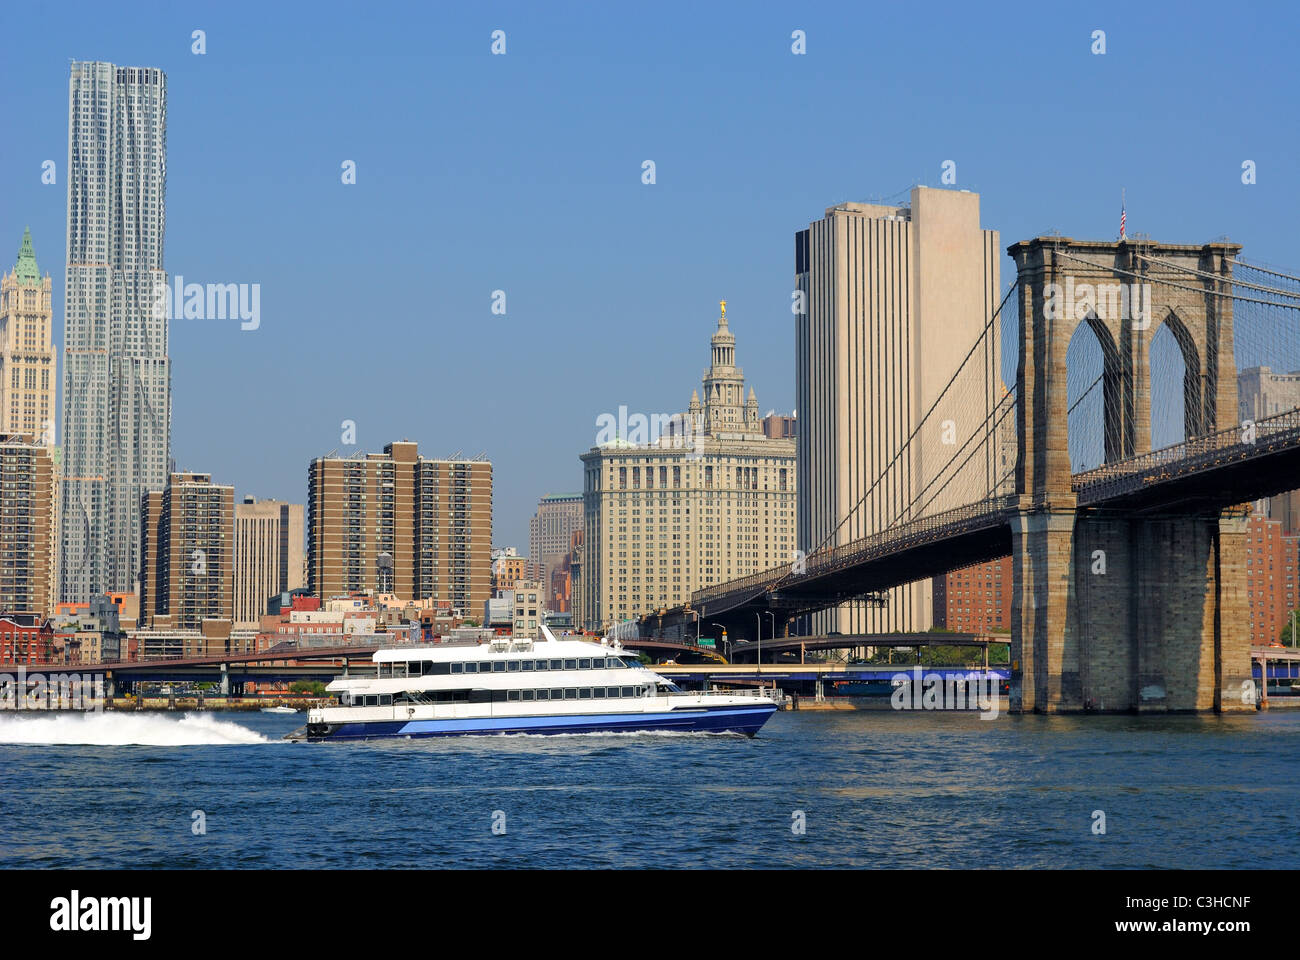 Un bateau de croisière sur l'East River titre sous le pont de Brooklyn à New York. Banque D'Images